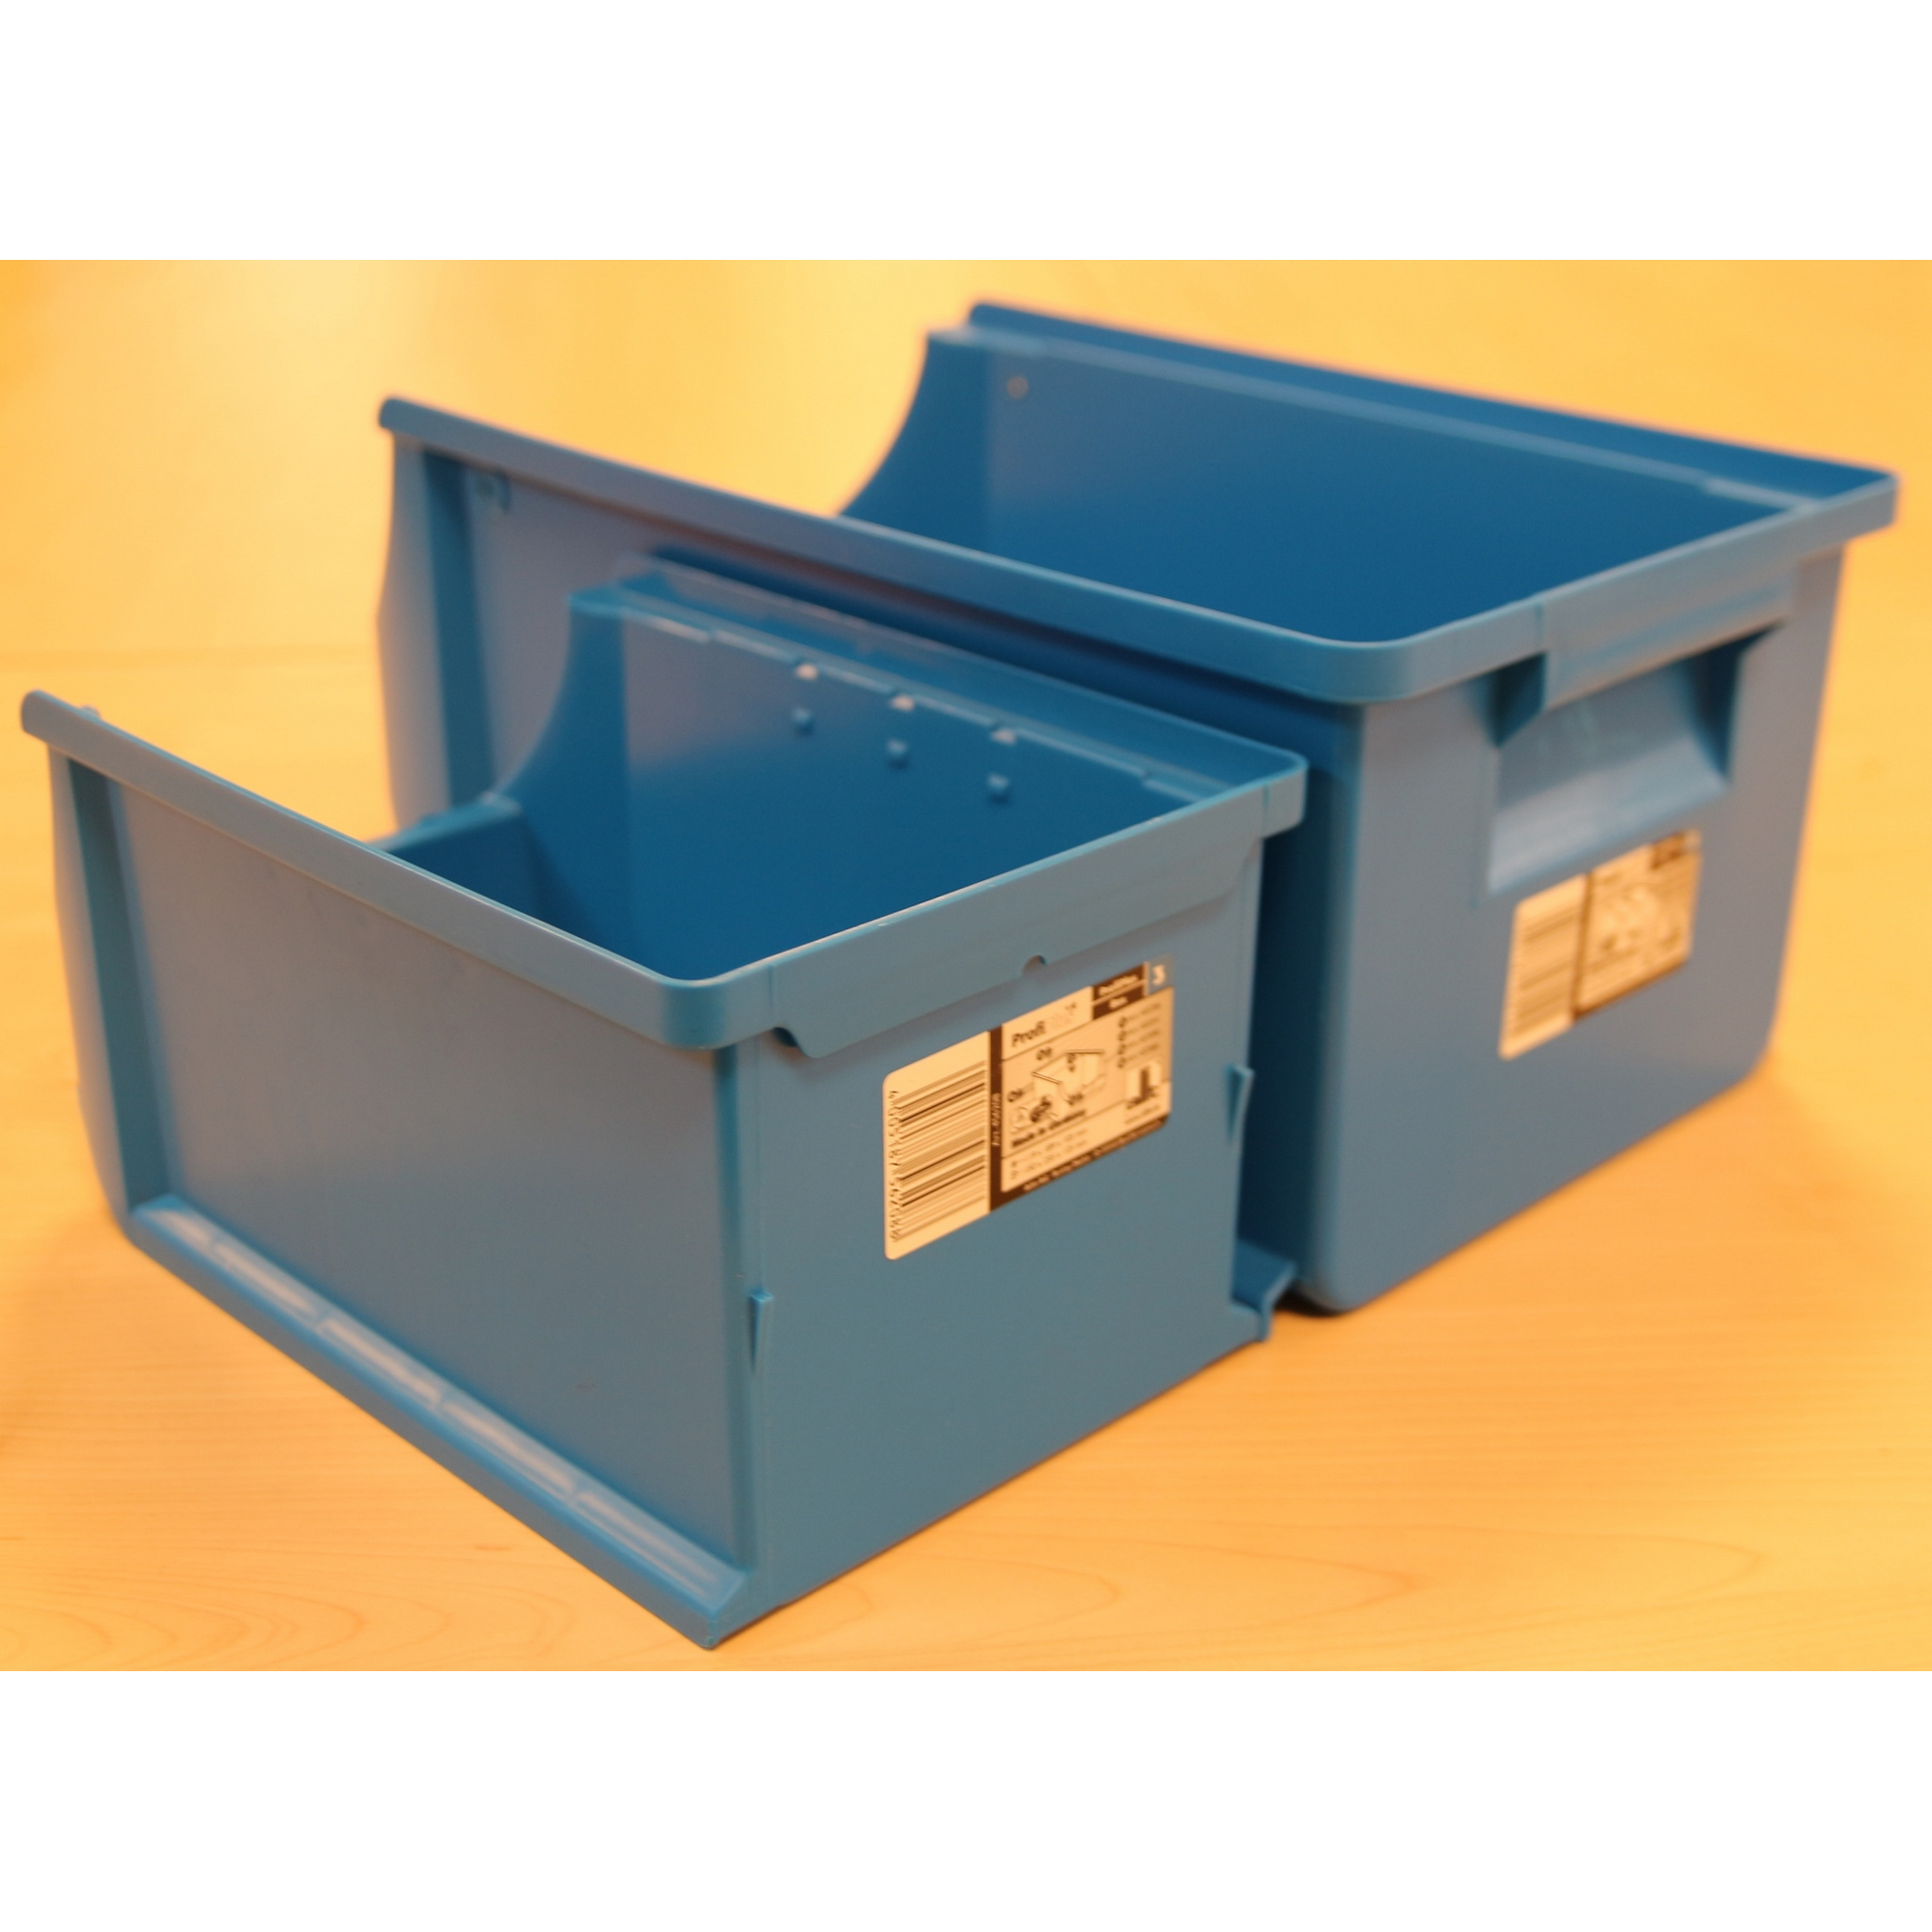 ProfiPlus Stapelsichtbox 'Box 3' blau 23,5 x 15 x 12,5 cm + product picture